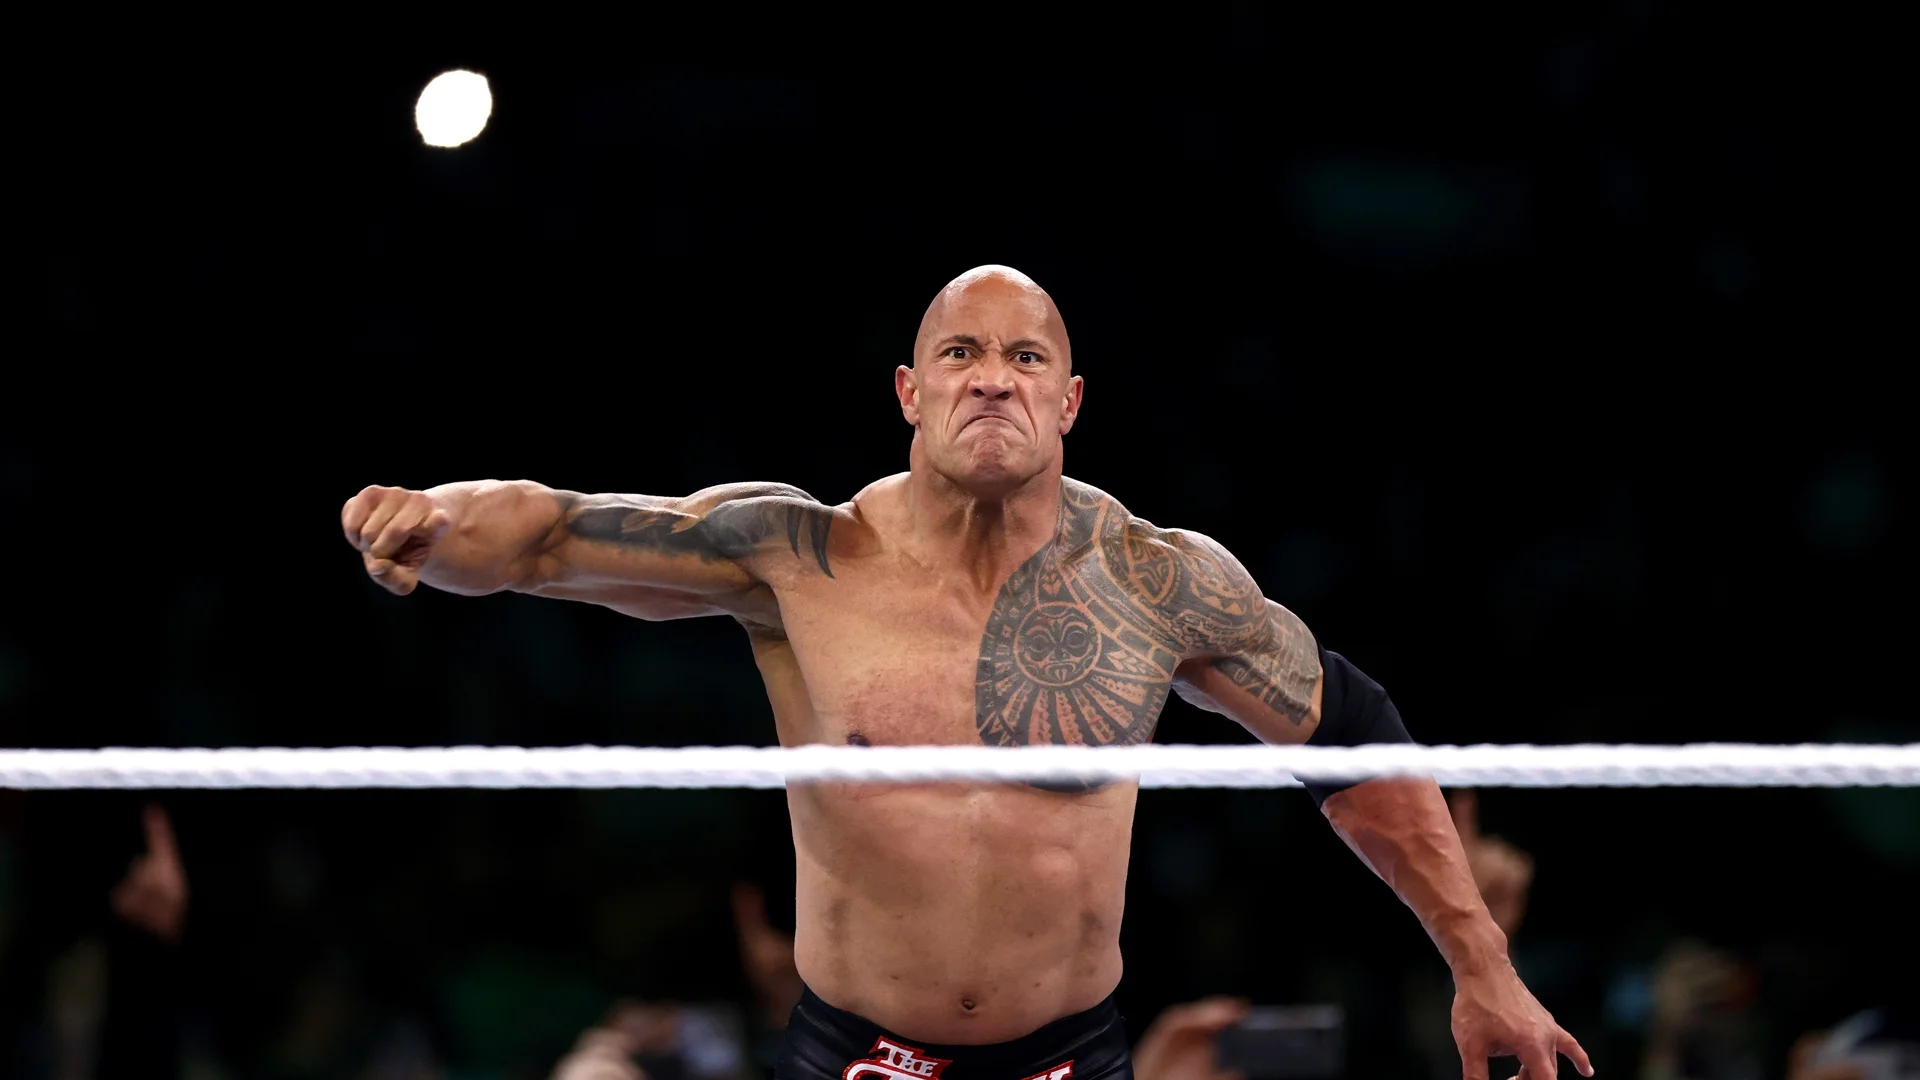 "Затваряй си устата": Скалата се скара с фен на WWE (ВИДЕО)